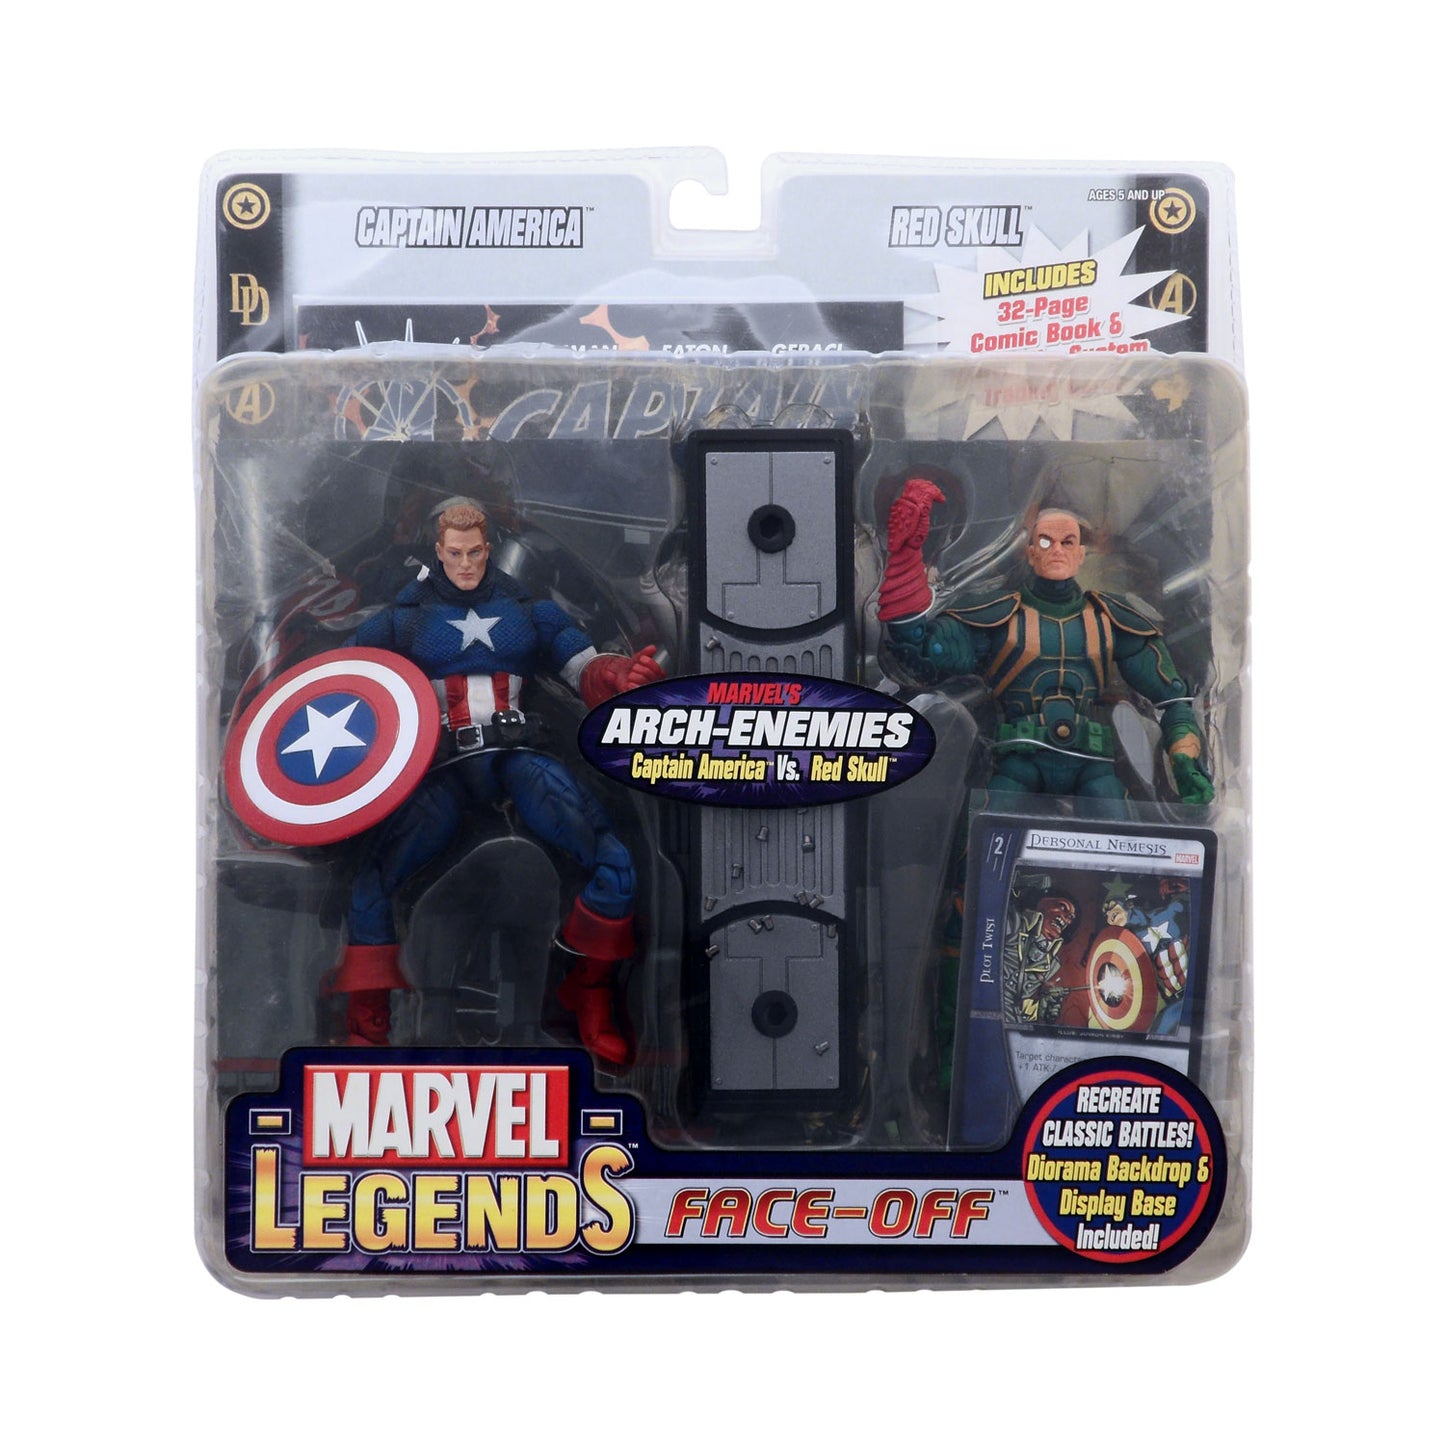 Marvel Legends Face-Off Captain America vs. Red Skull (Baron Strucker) Action Figure 2-Pack